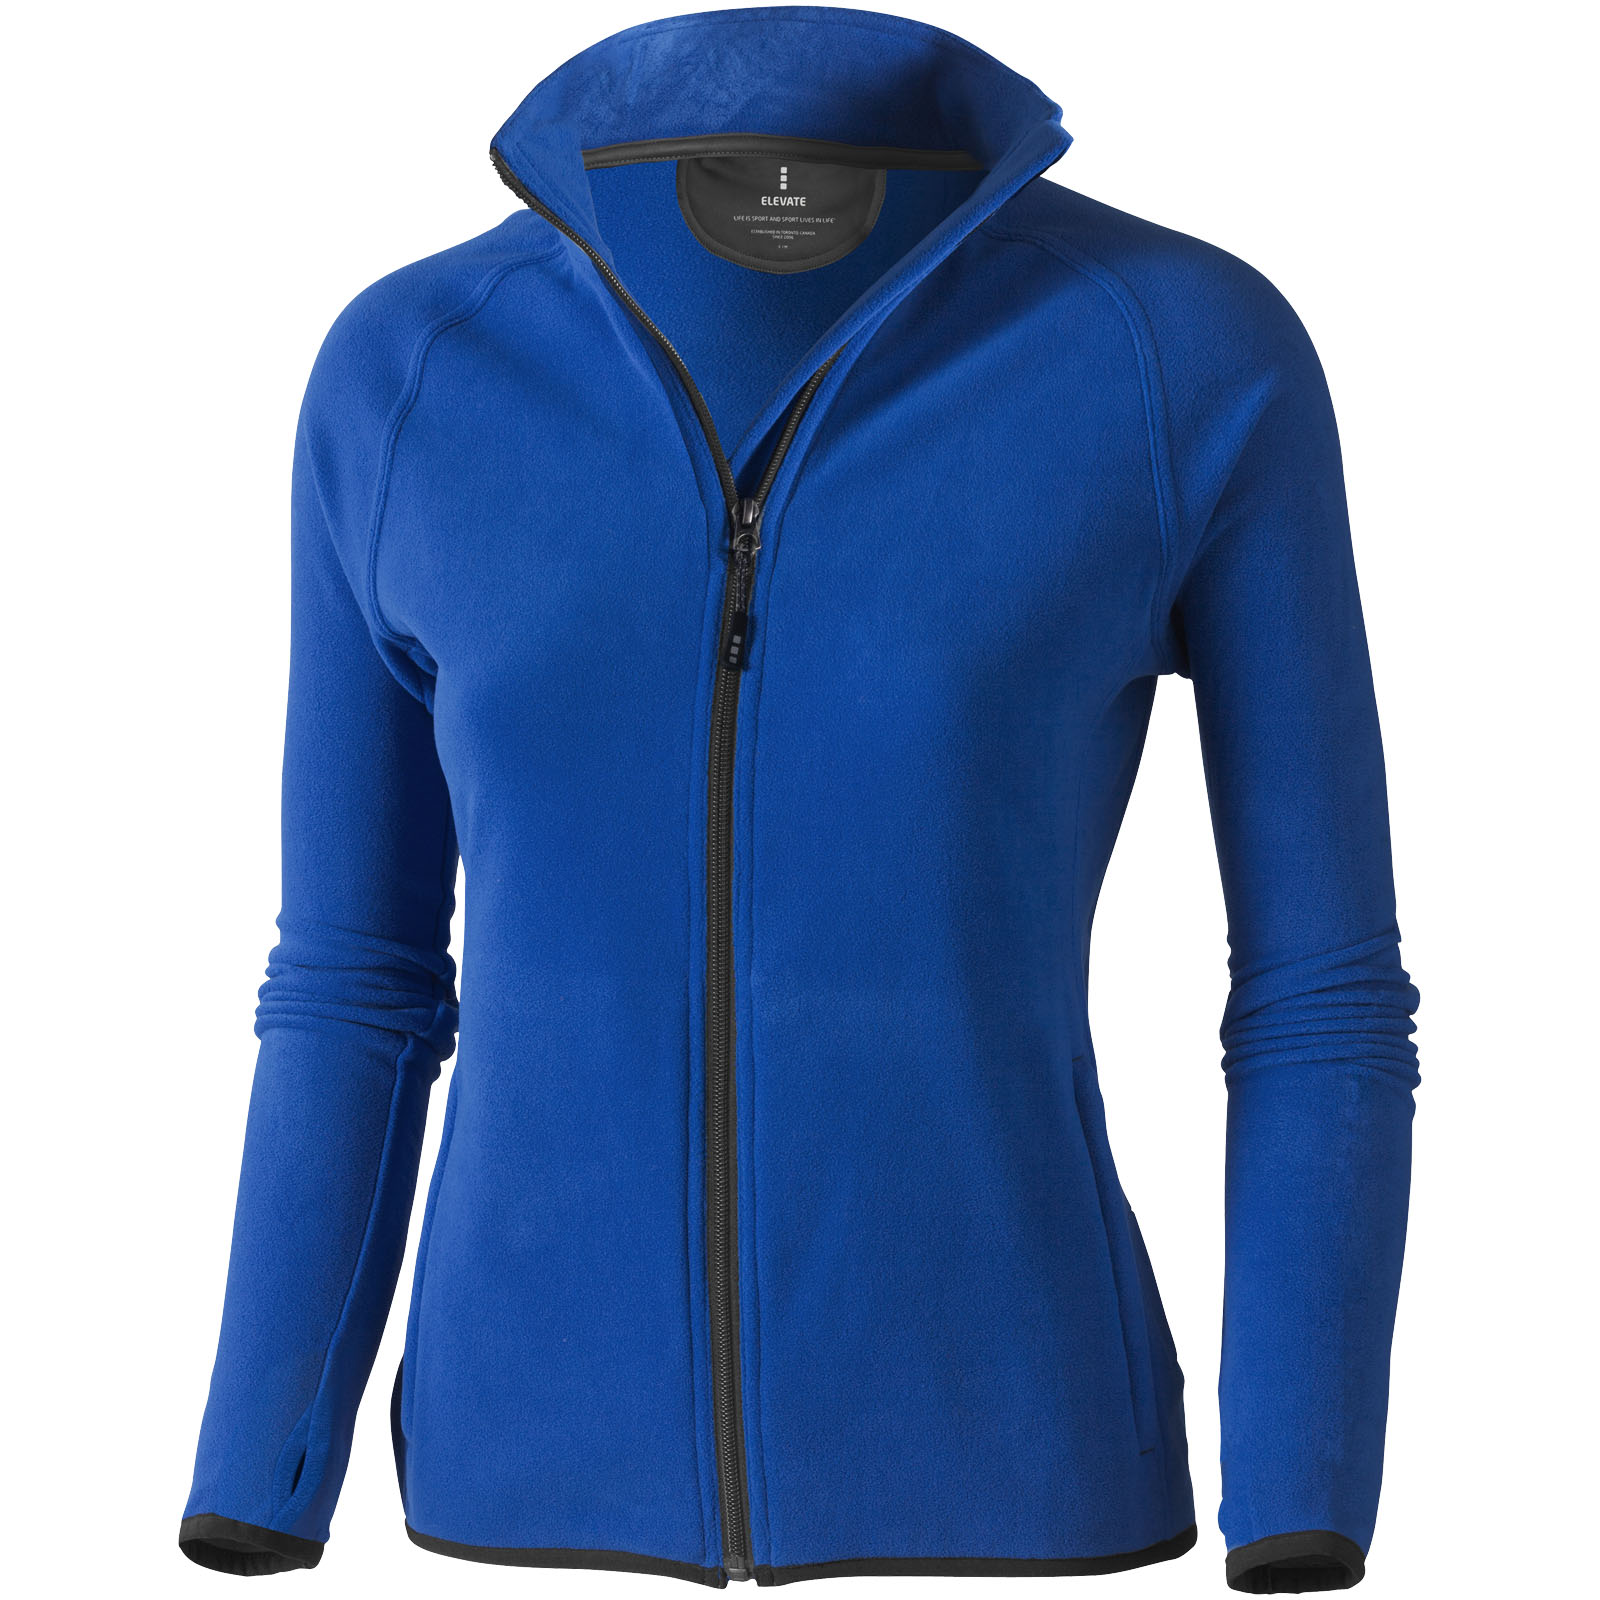 Advertising Fleece - Brossard women's full zip fleece jacket - 0